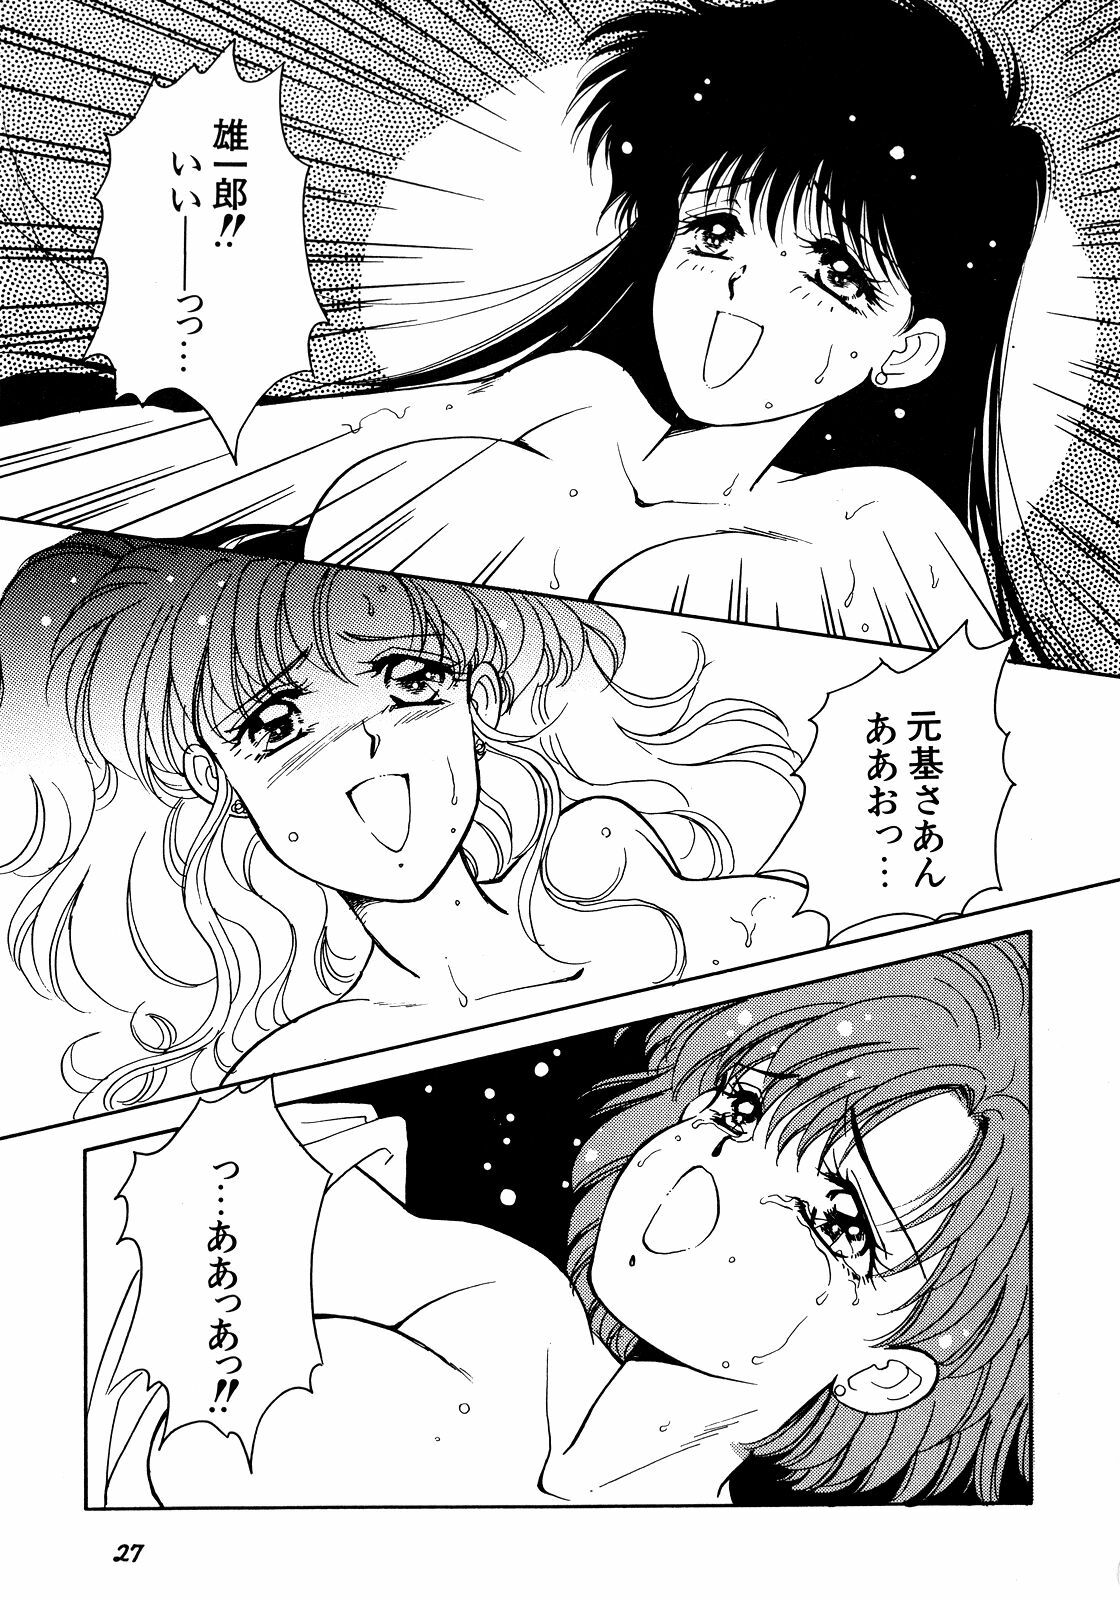 [Anthology] Lunatic Party 5 (Bishoujo Senshi Sailor Moon) page 28 full